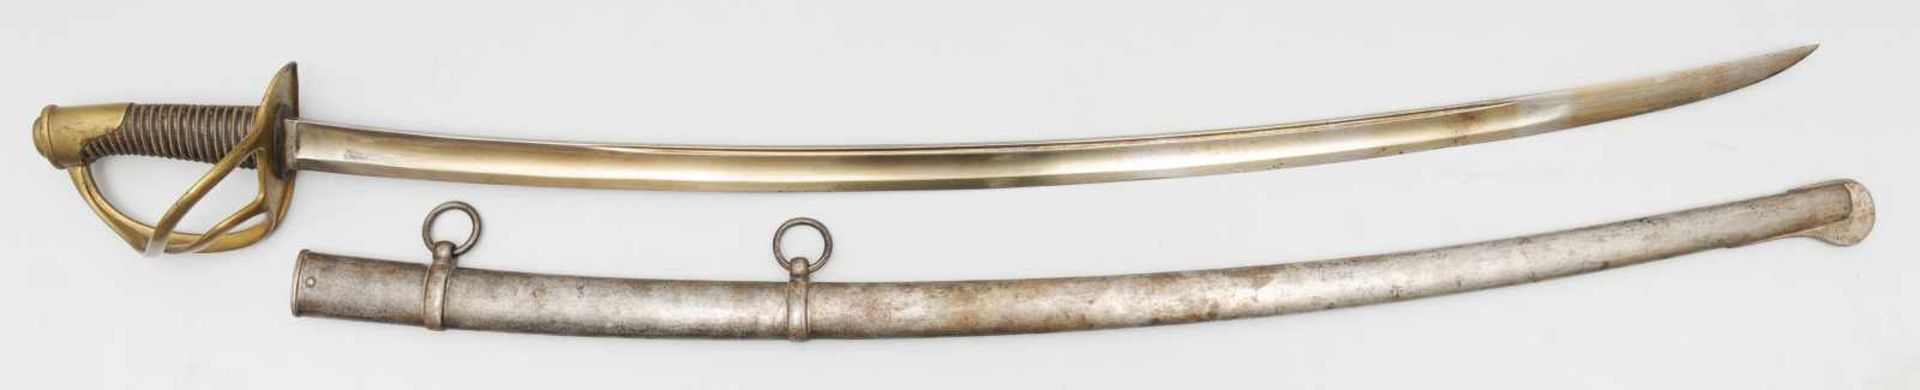 Französischer Säbel der leichten Kavallerie M 1822. Gekehlte Rückenklinge mit Manufaktursignatur.